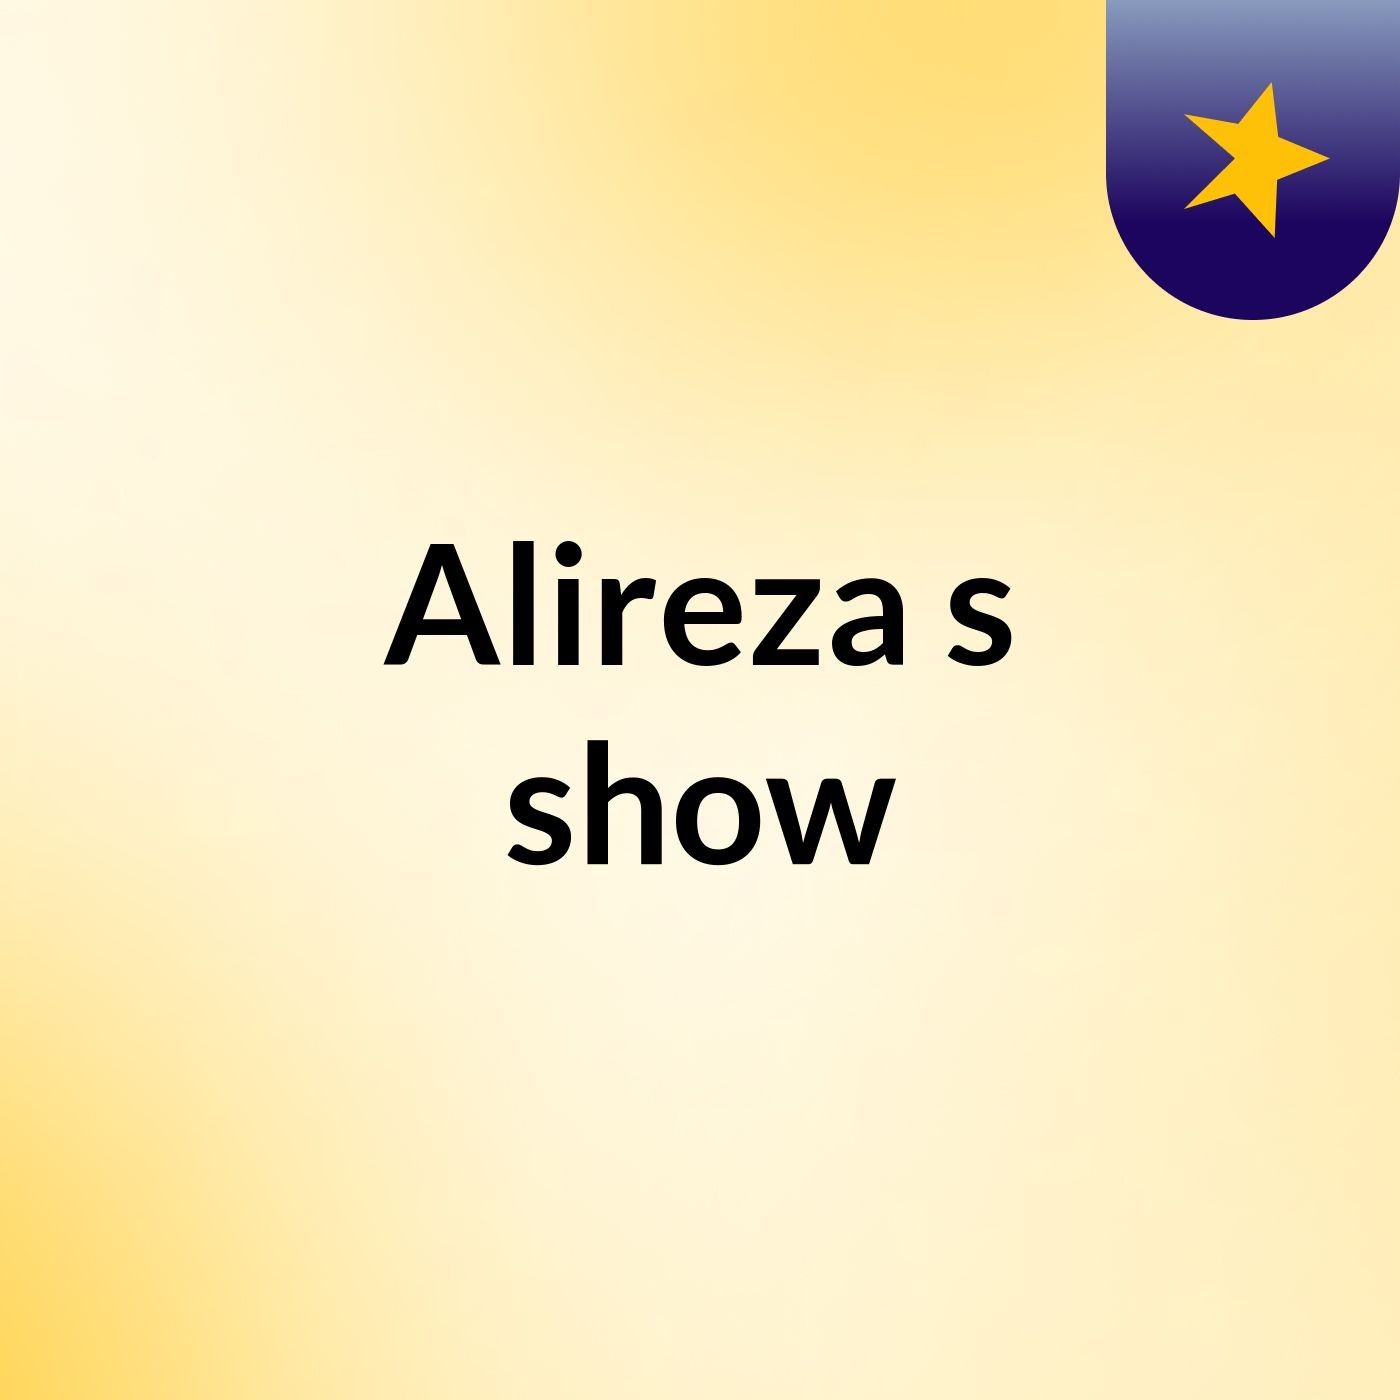 Alireza's show